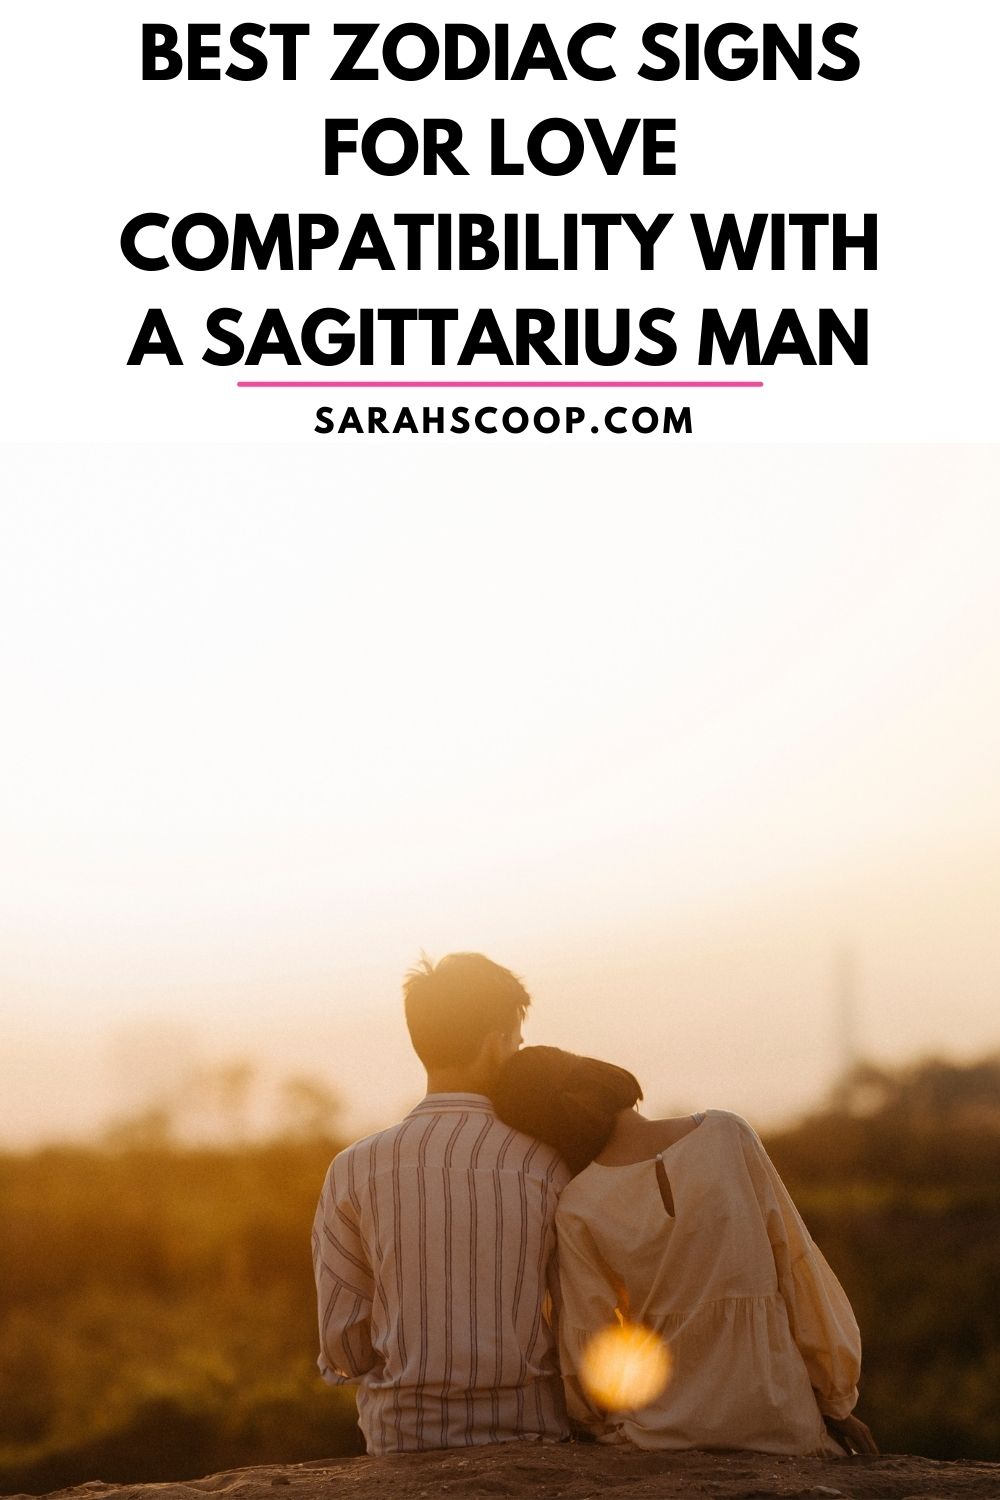 How To Treat A Sagittarius Man